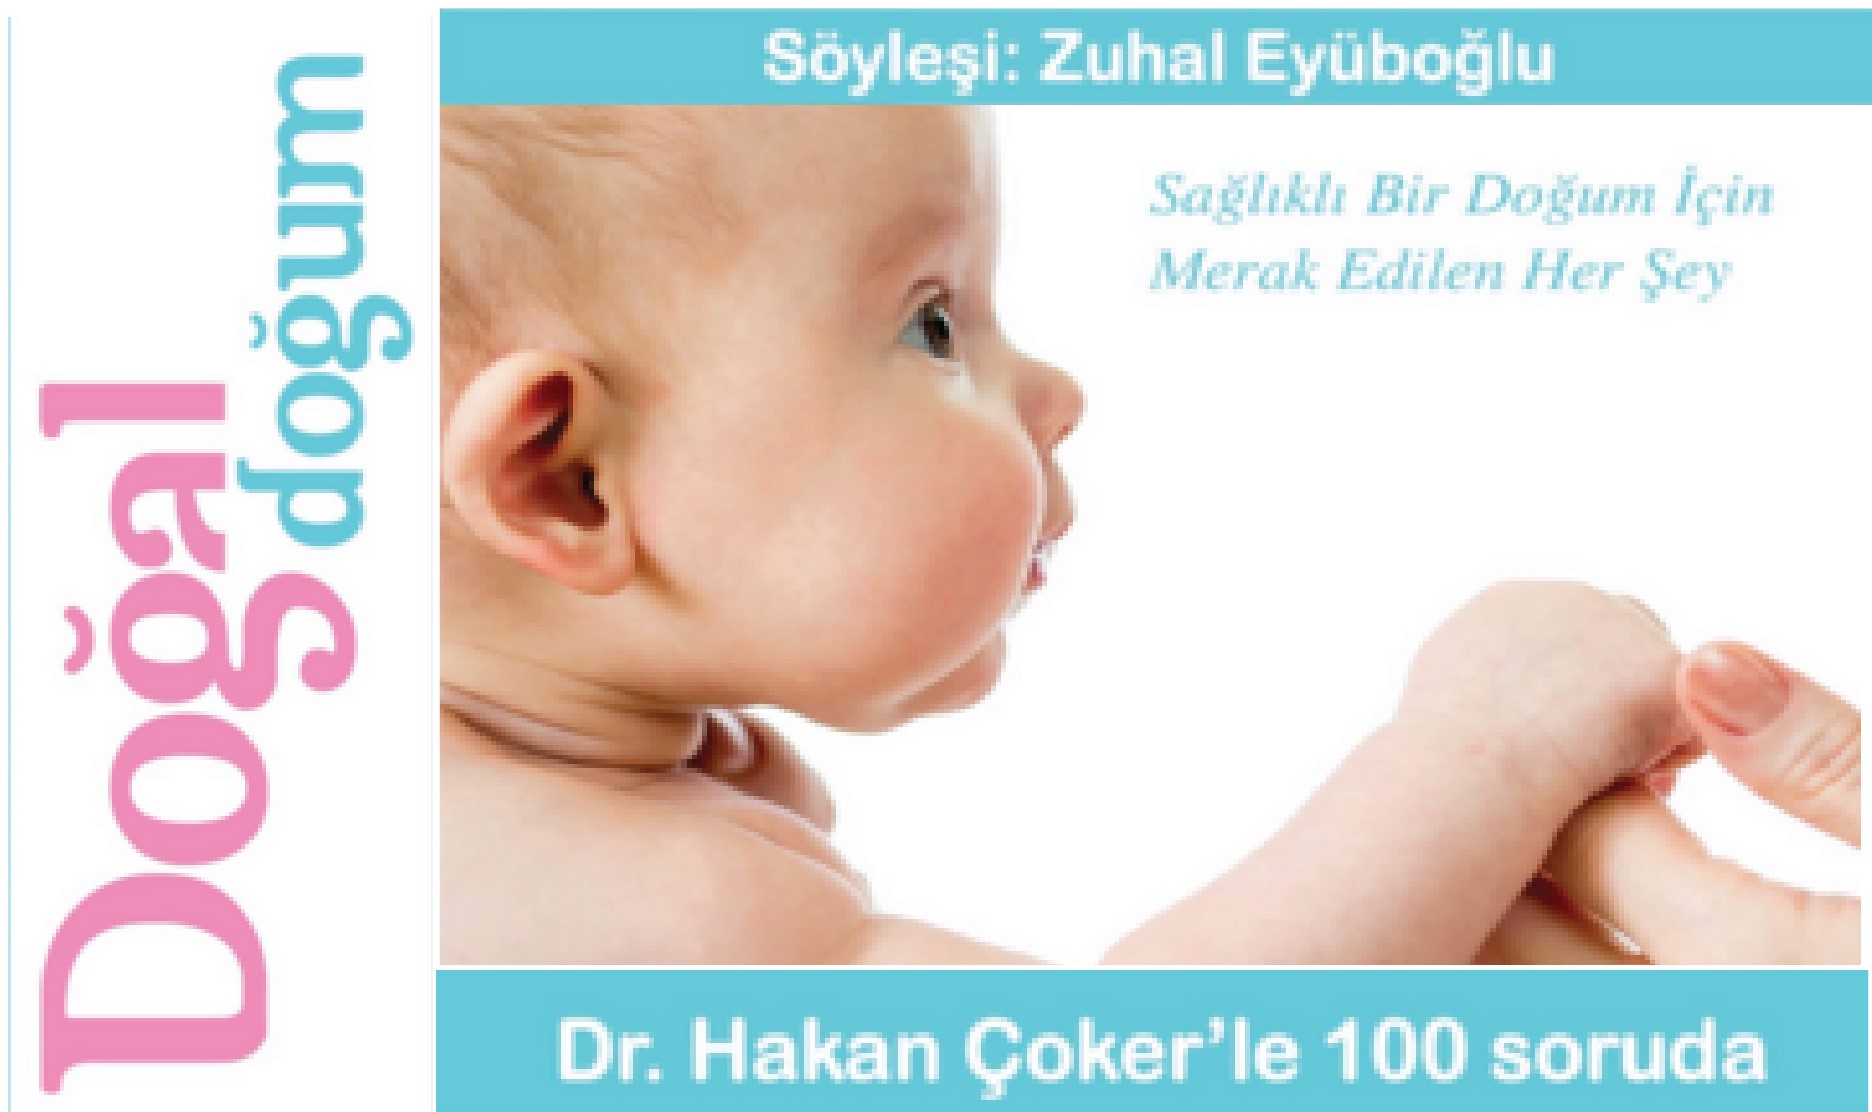 Dr. Hakan Çoker'le 100 Soruda Doğal Doğum kitabı çıktı.